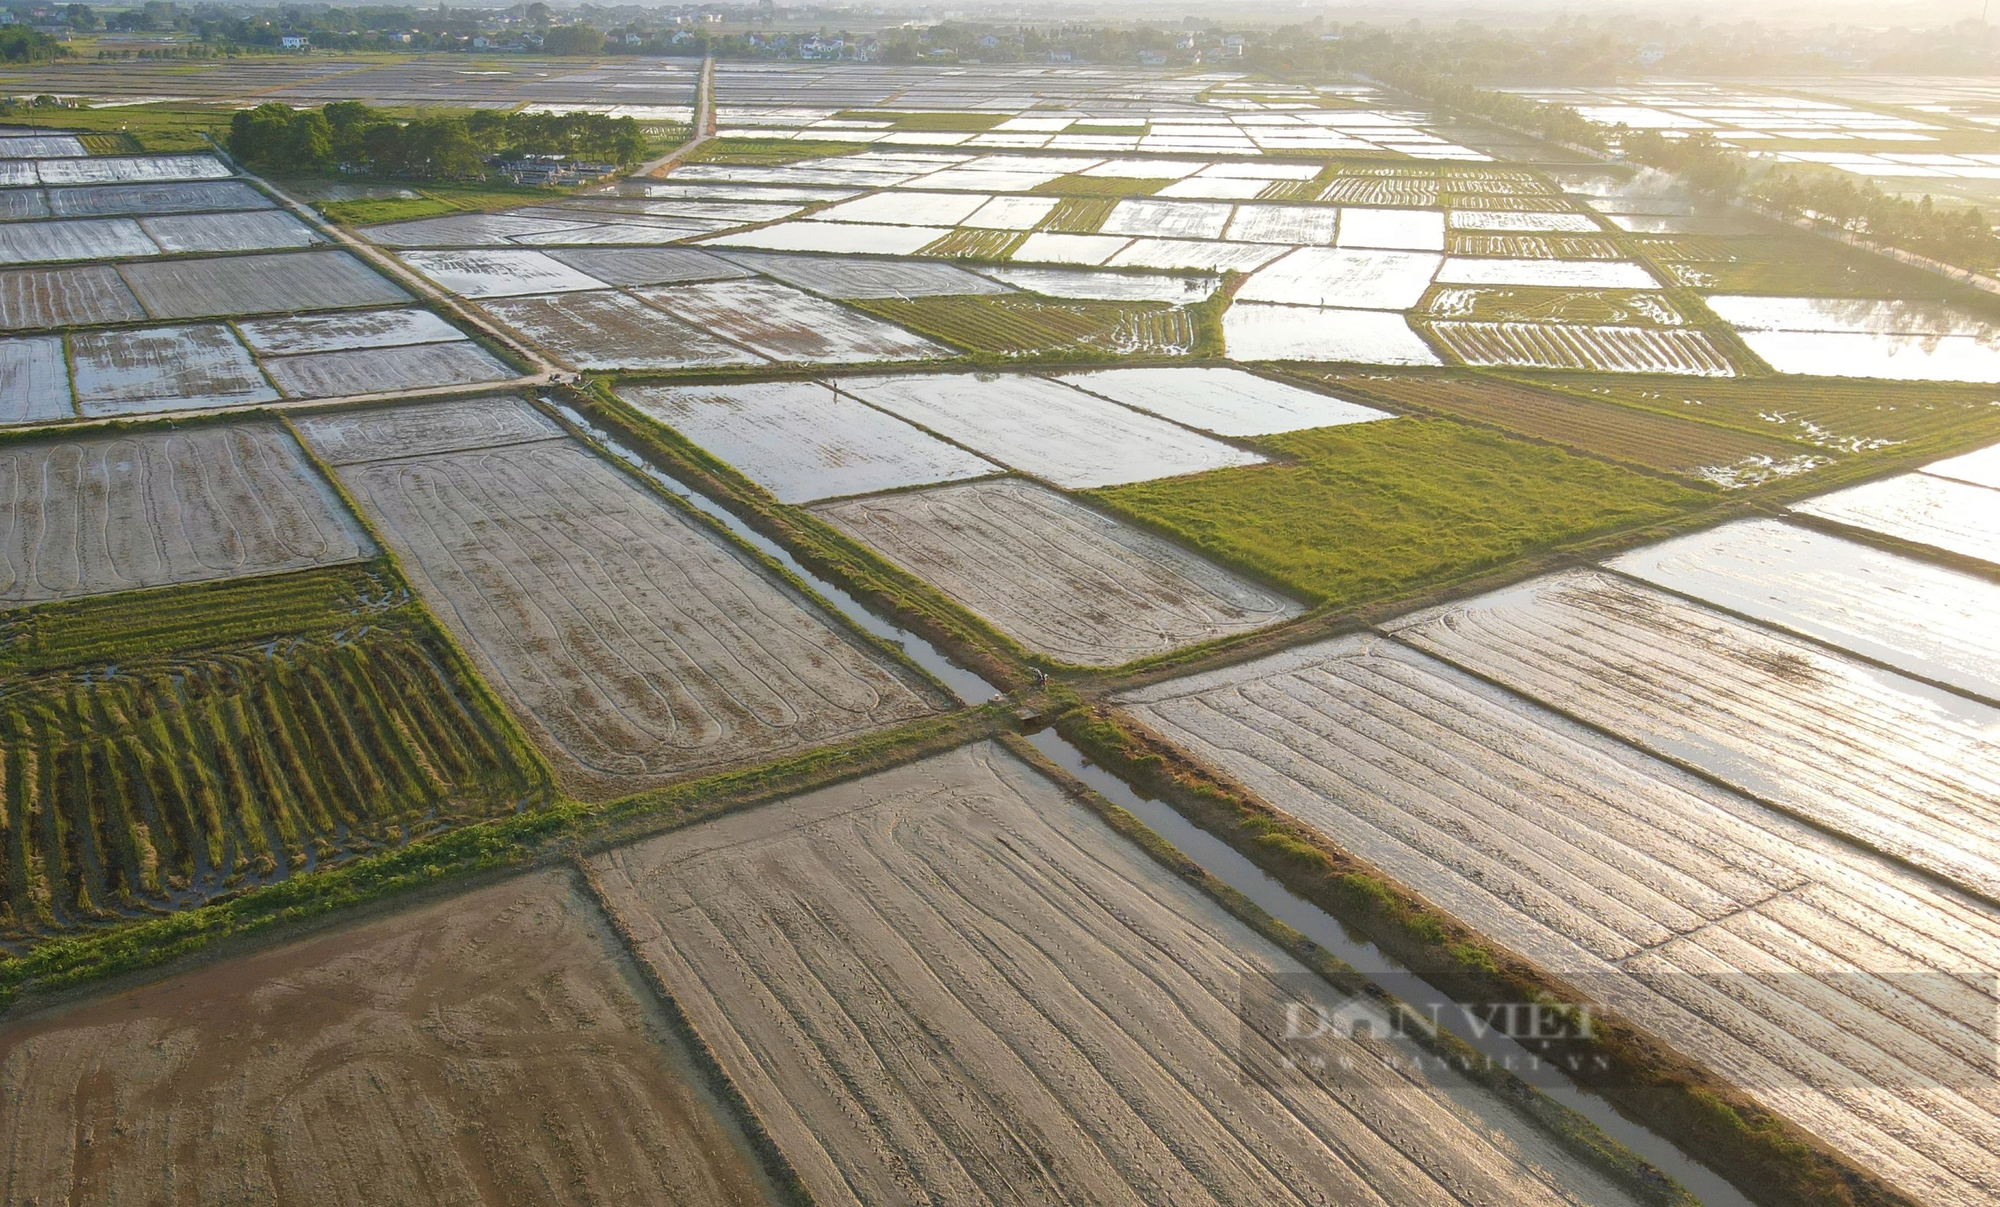 Thợ cấy lúa ở Nghệ An đắt khách, có nơi trả công gần nửa triệu một ngày vẫn khó thuê- Ảnh 9.